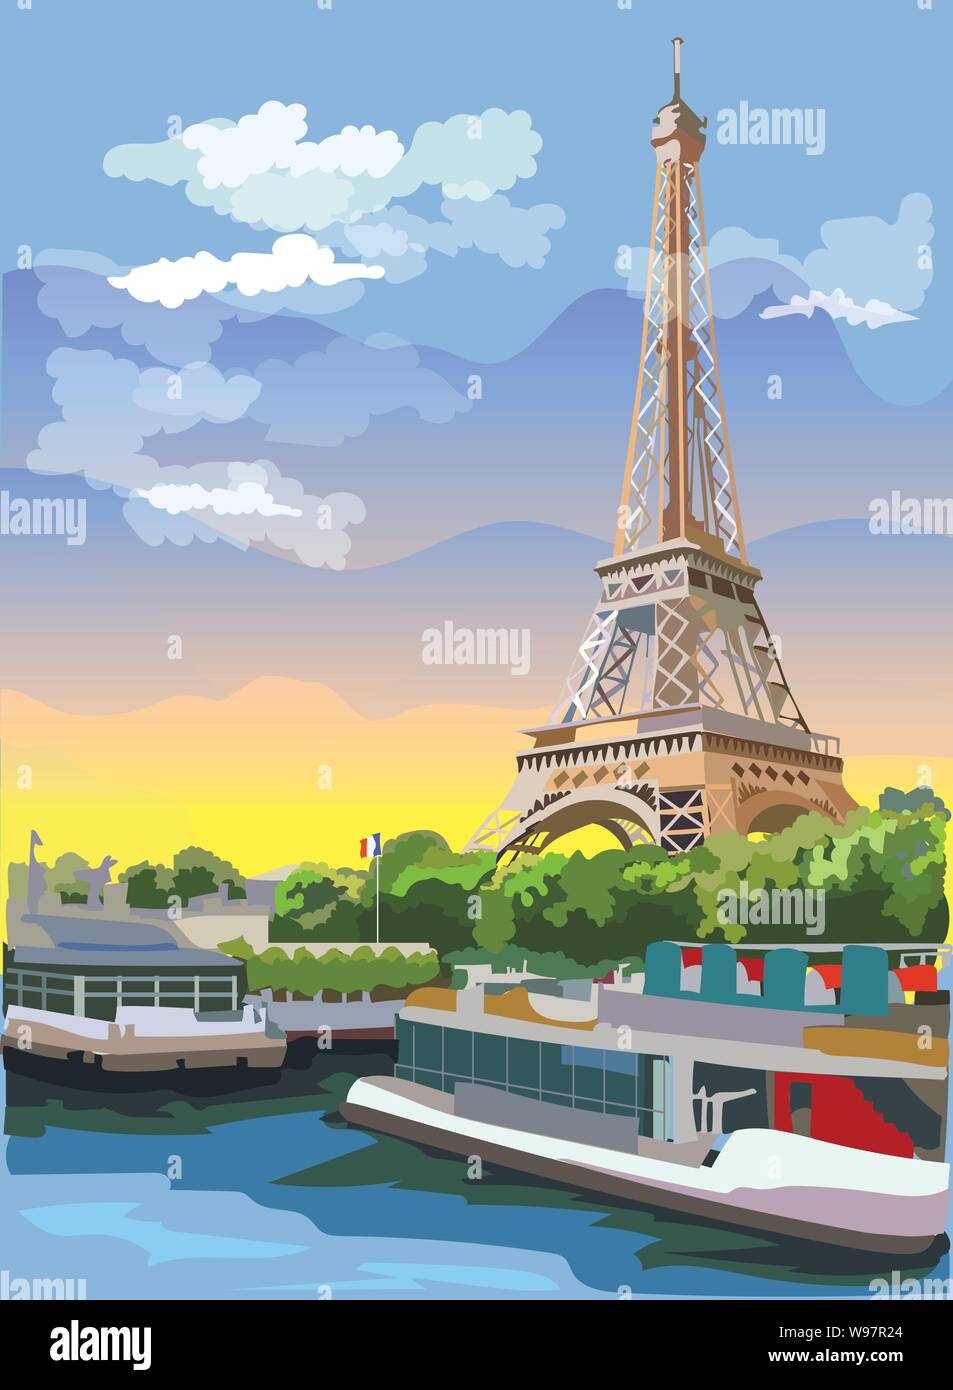 Bunte vektor Abbildung: Eiffelturm, Wahrzeichen von Paris, Frankreich. Stadtbild mit dem Eiffelturm, mit Blick auf Seine River Embankment. Bunte Vektor Stock Vektor